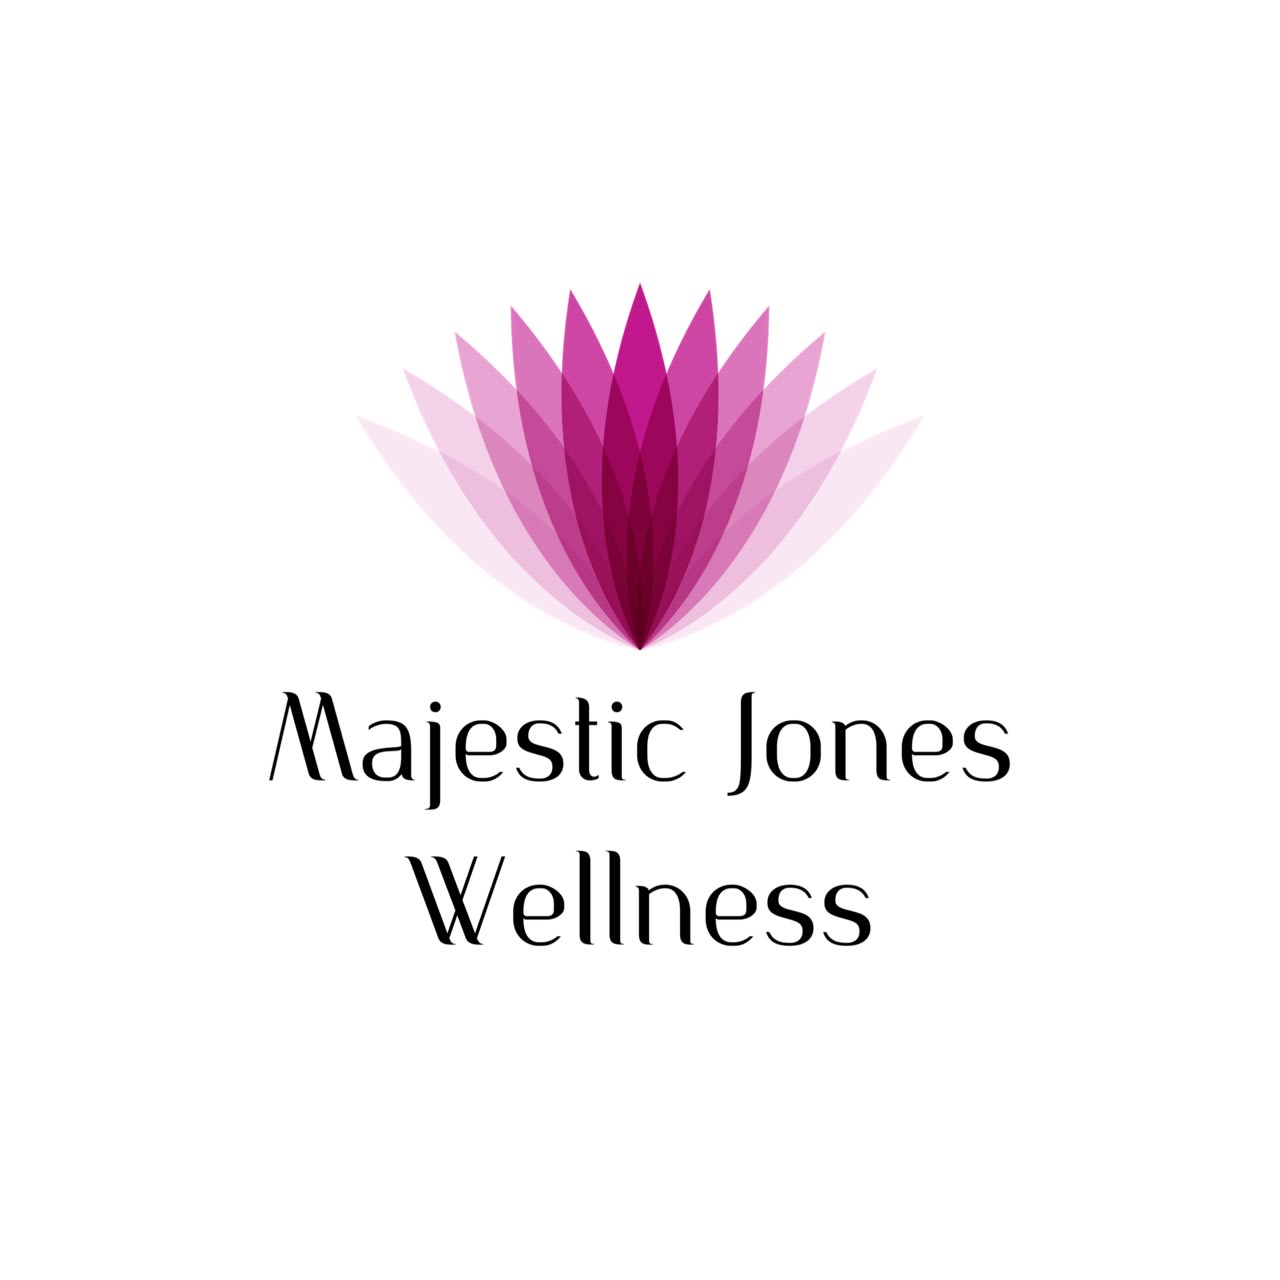 Majestic Jones Wellness